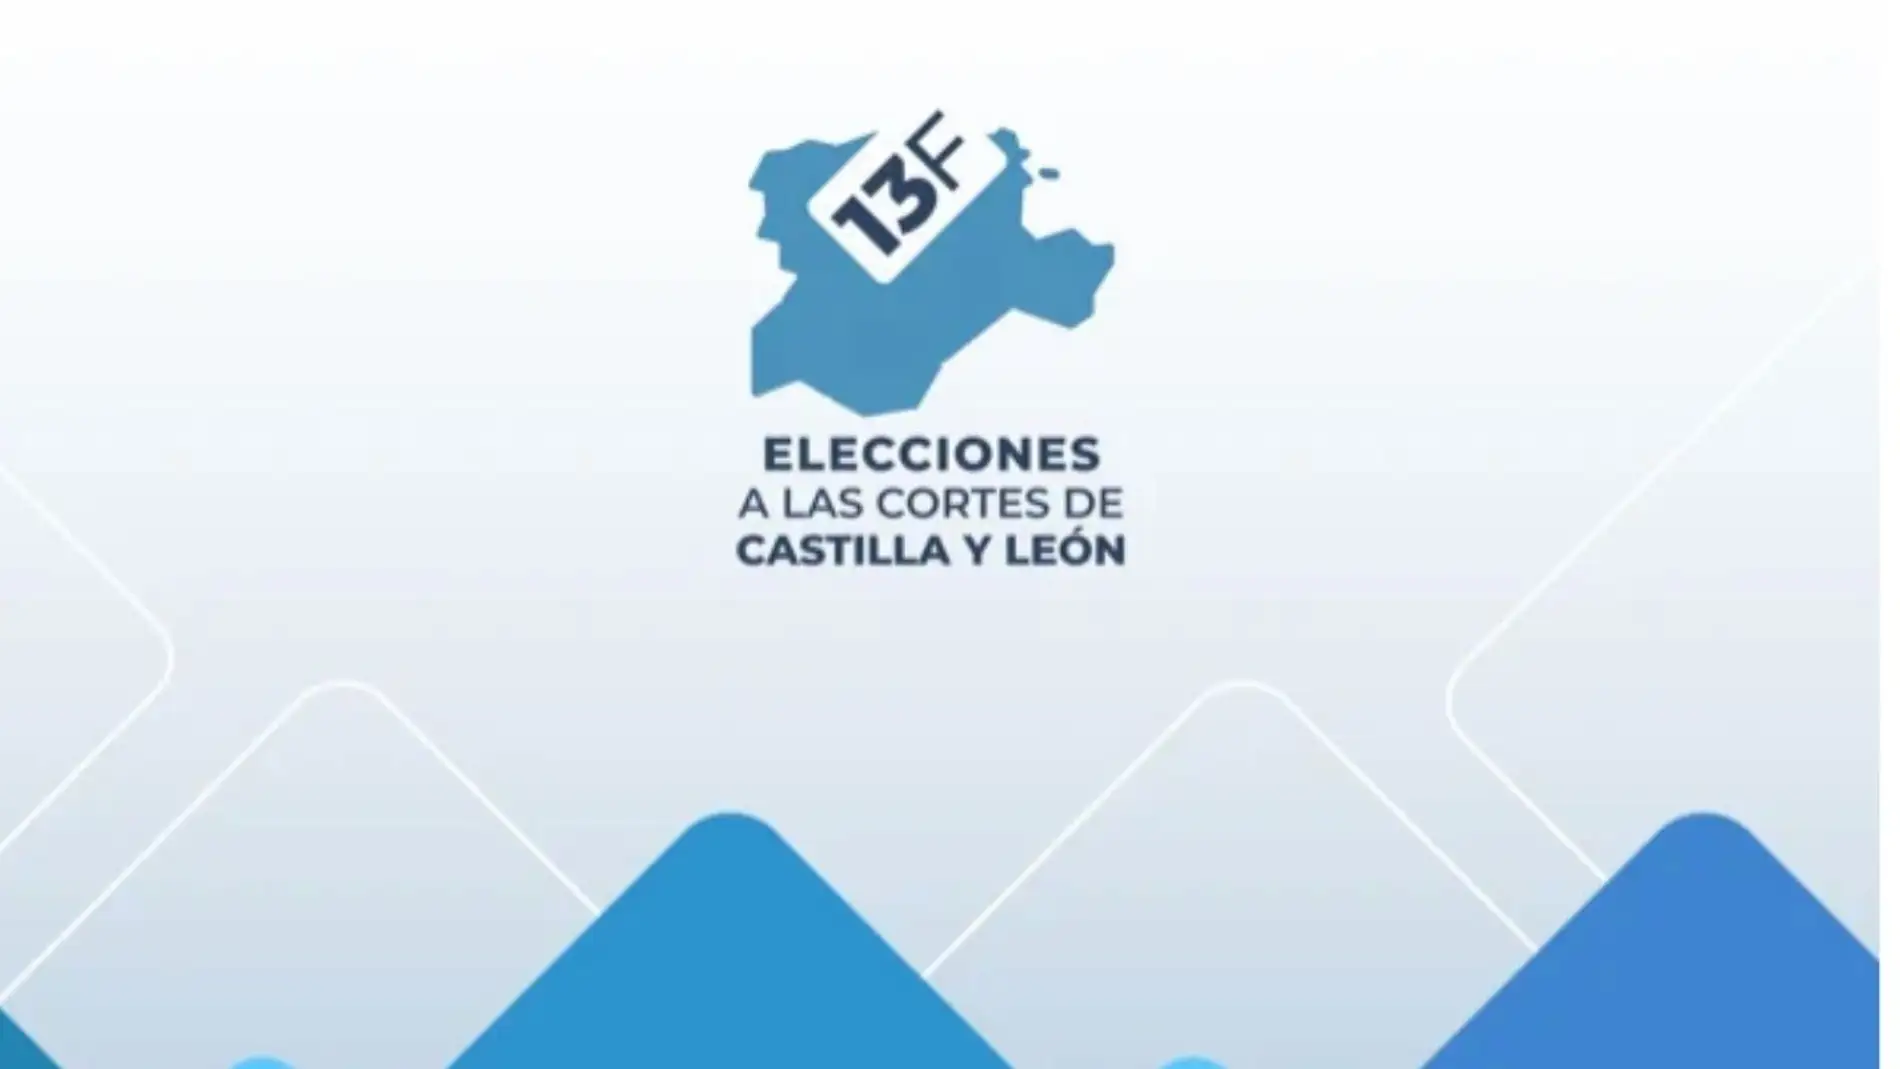 App de Castilla y León para las elecciones del 13 de febrero